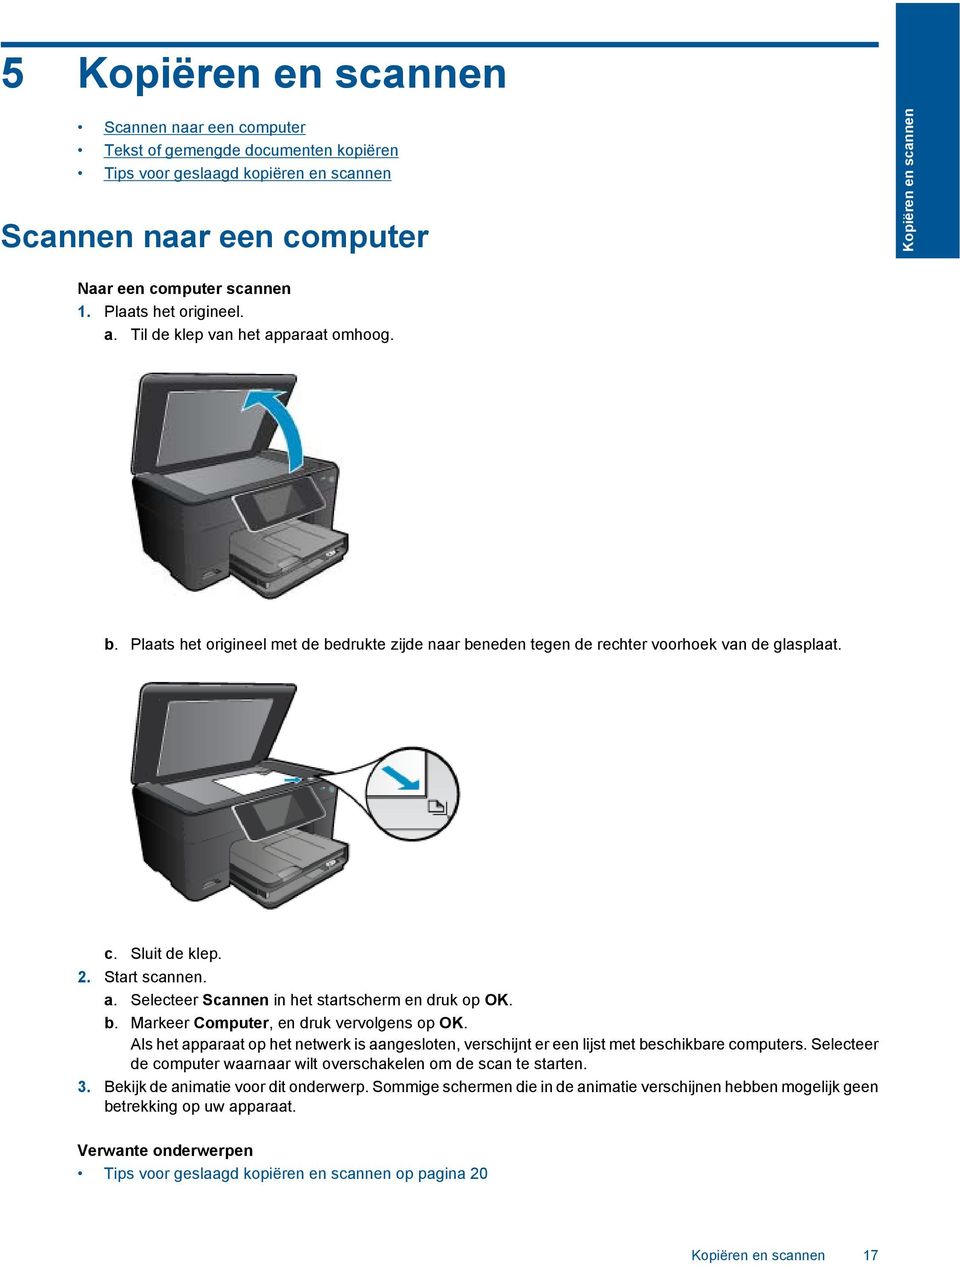 a. Selecteer Scannen in het startscherm en druk op OK. b. Markeer Computer, en druk vervolgens op OK. Als het apparaat op het netwerk is aangesloten, verschijnt er een lijst met beschikbare computers.